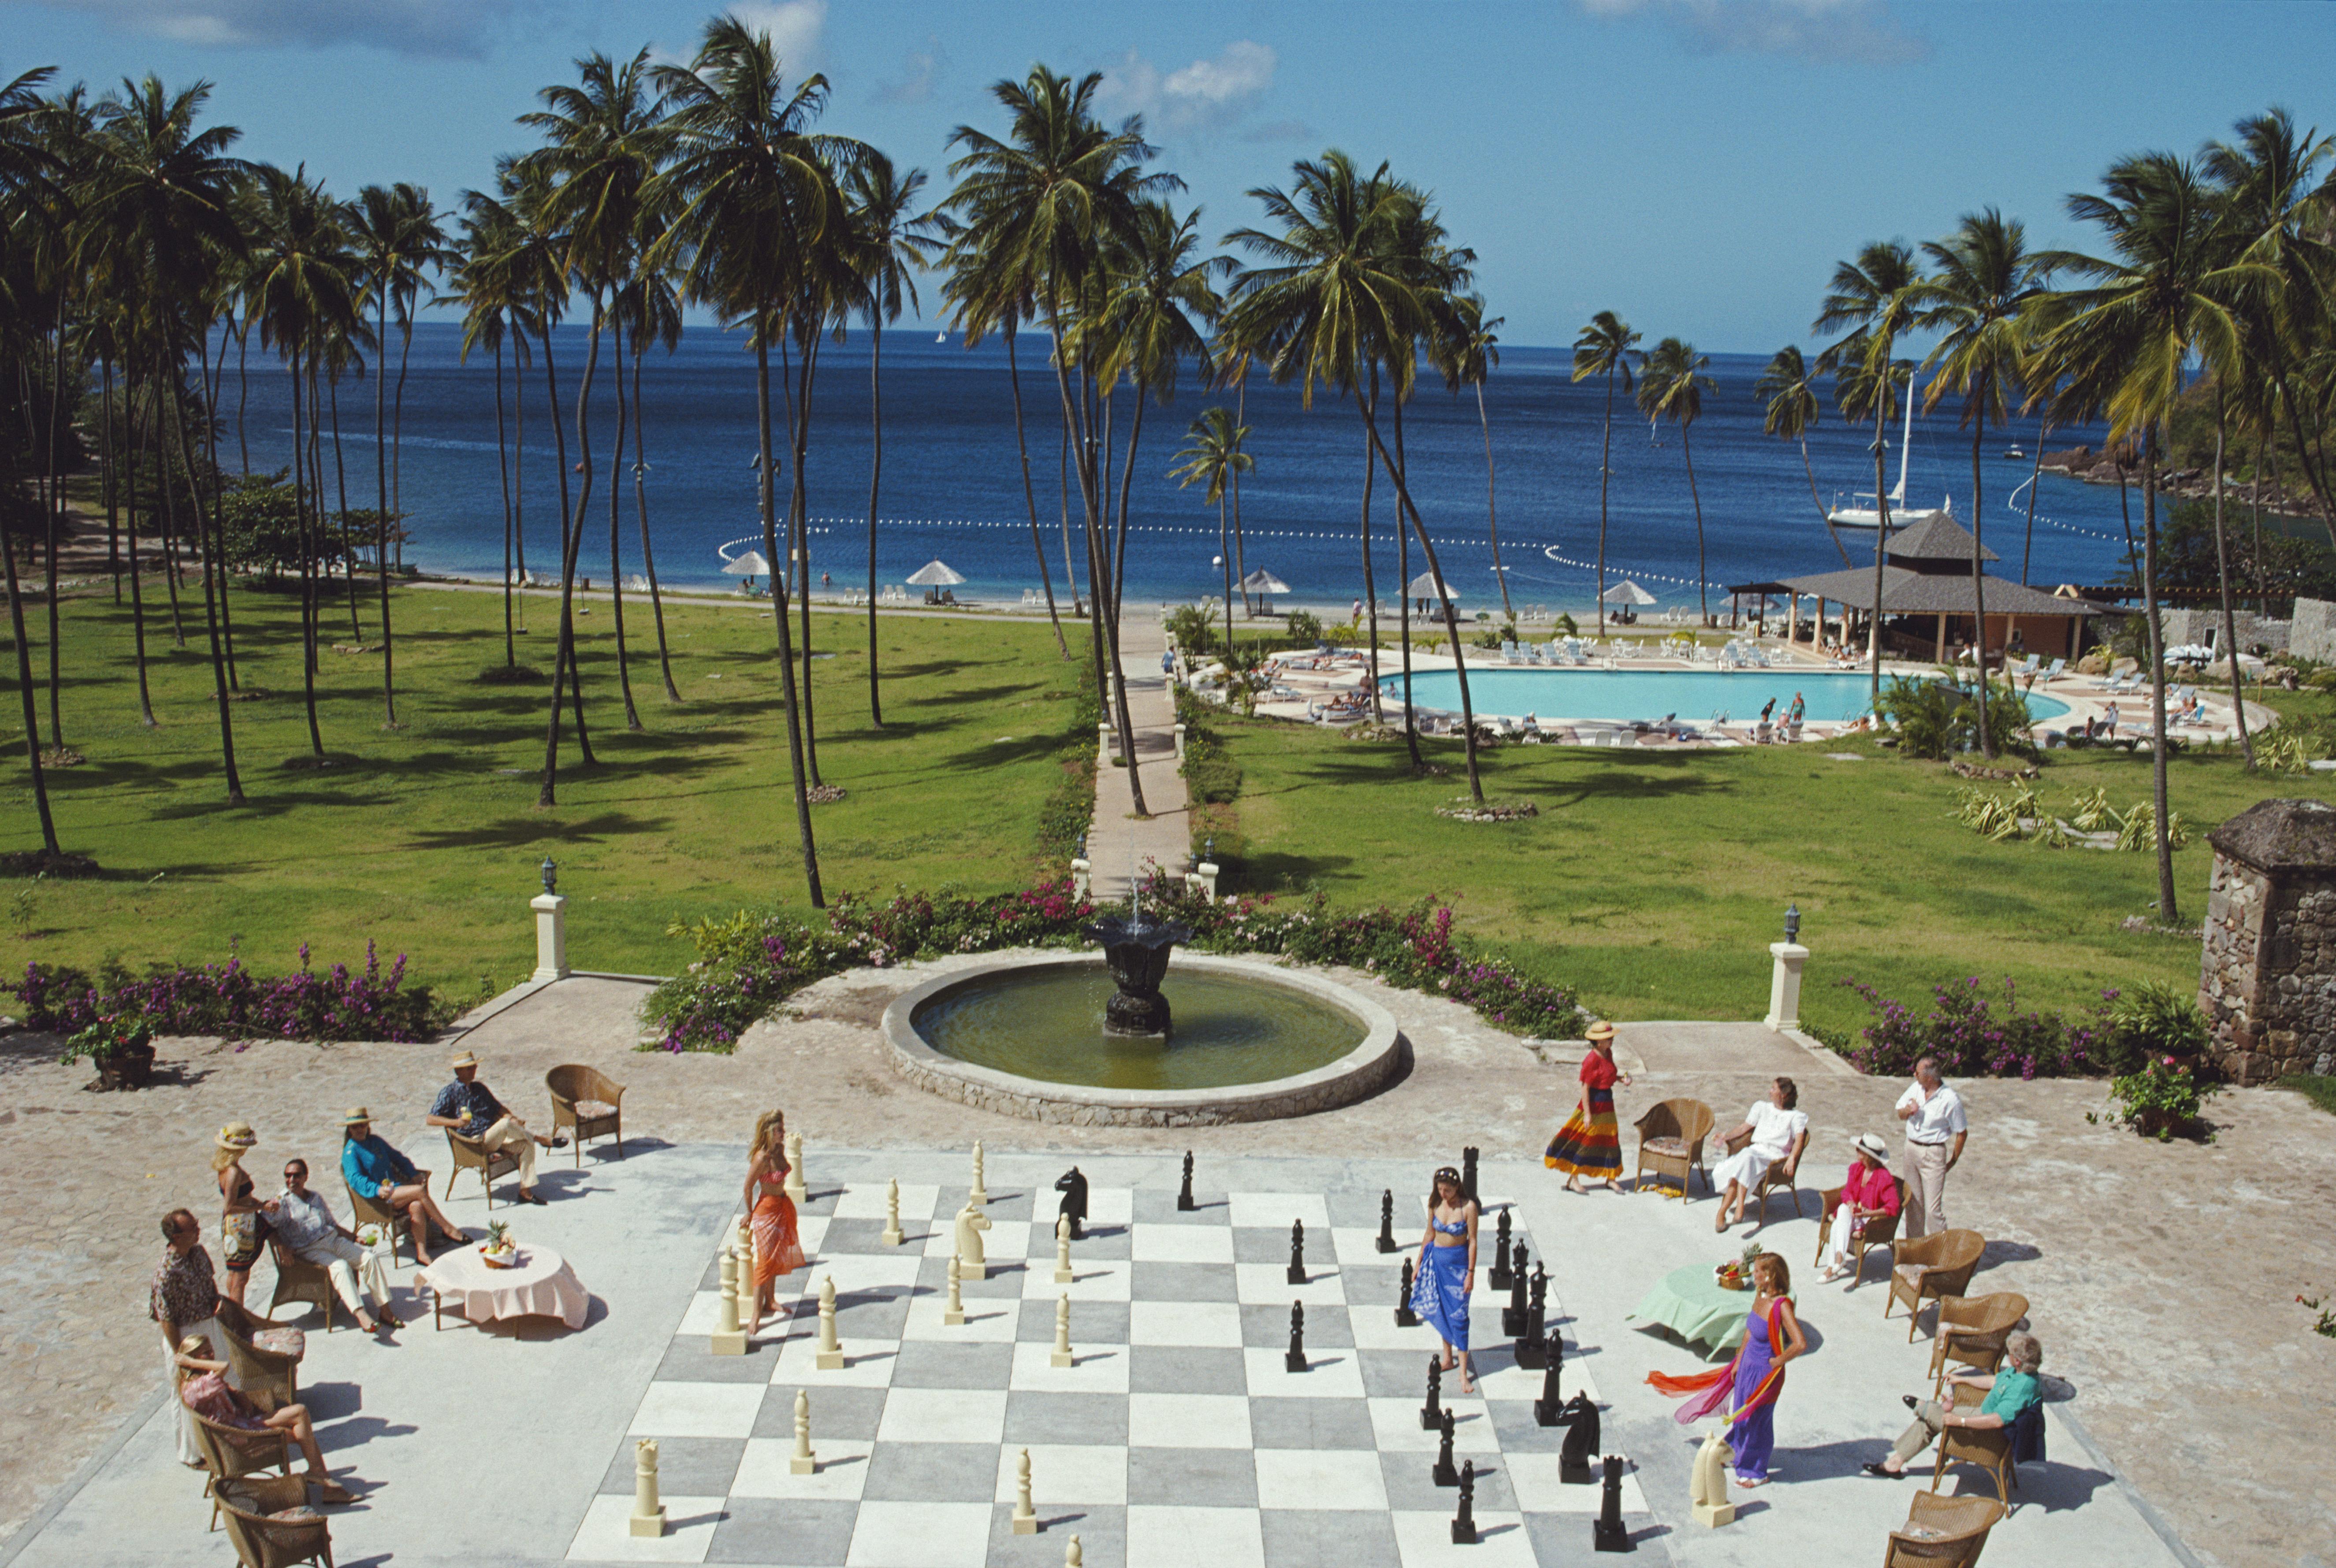 megachess 1993 Slim Aarons Edition Estate Limitée

Une partie d'échecs géante à Sainte-Lucie, dans les Petites Antilles, en février 1993. 

Produit à partir de la transparence originale
Certificat d'authenticité fourni 
30x40 inches / 76 x 102 cm